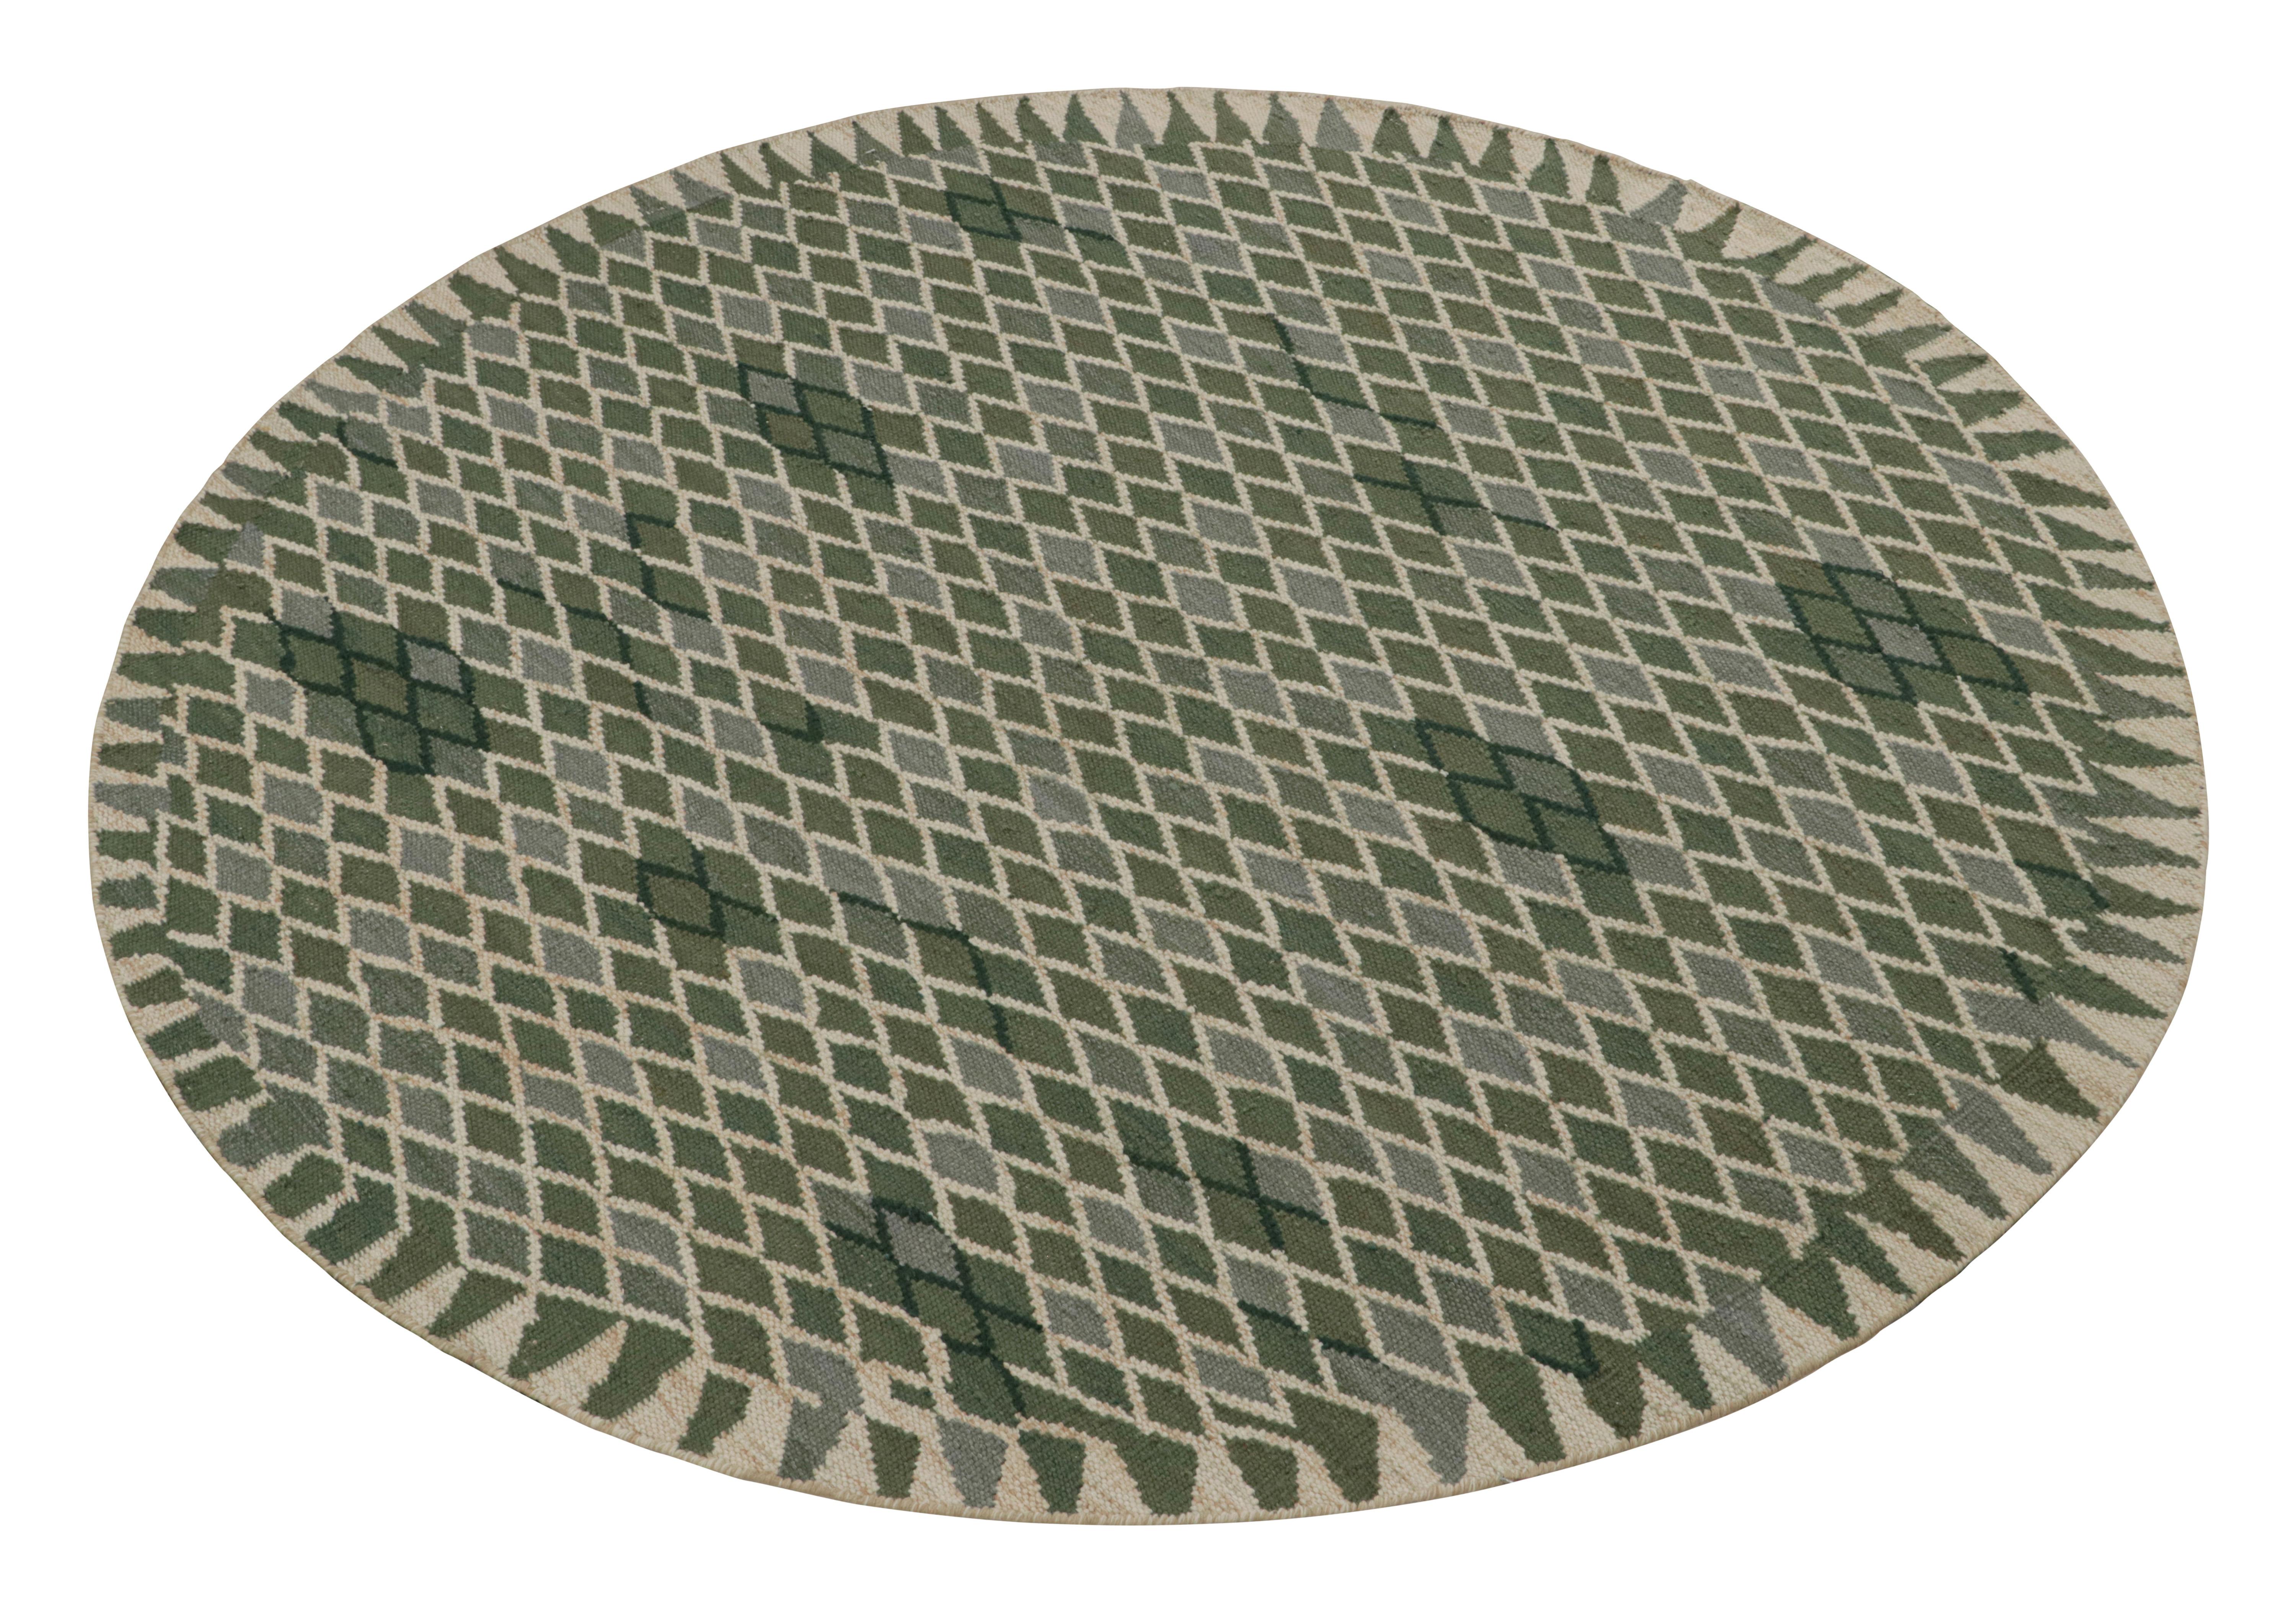 Ce tapis circulaire de 8 pieds et kilim de style suédois fait partie de la collection de tapis scandinaves primés de Rug & Kilim. Tissé à la main en laine, coton et fils naturels, ce modèle s'inspire des tapis suédois déco Rollakan et Rya. 

Sur le